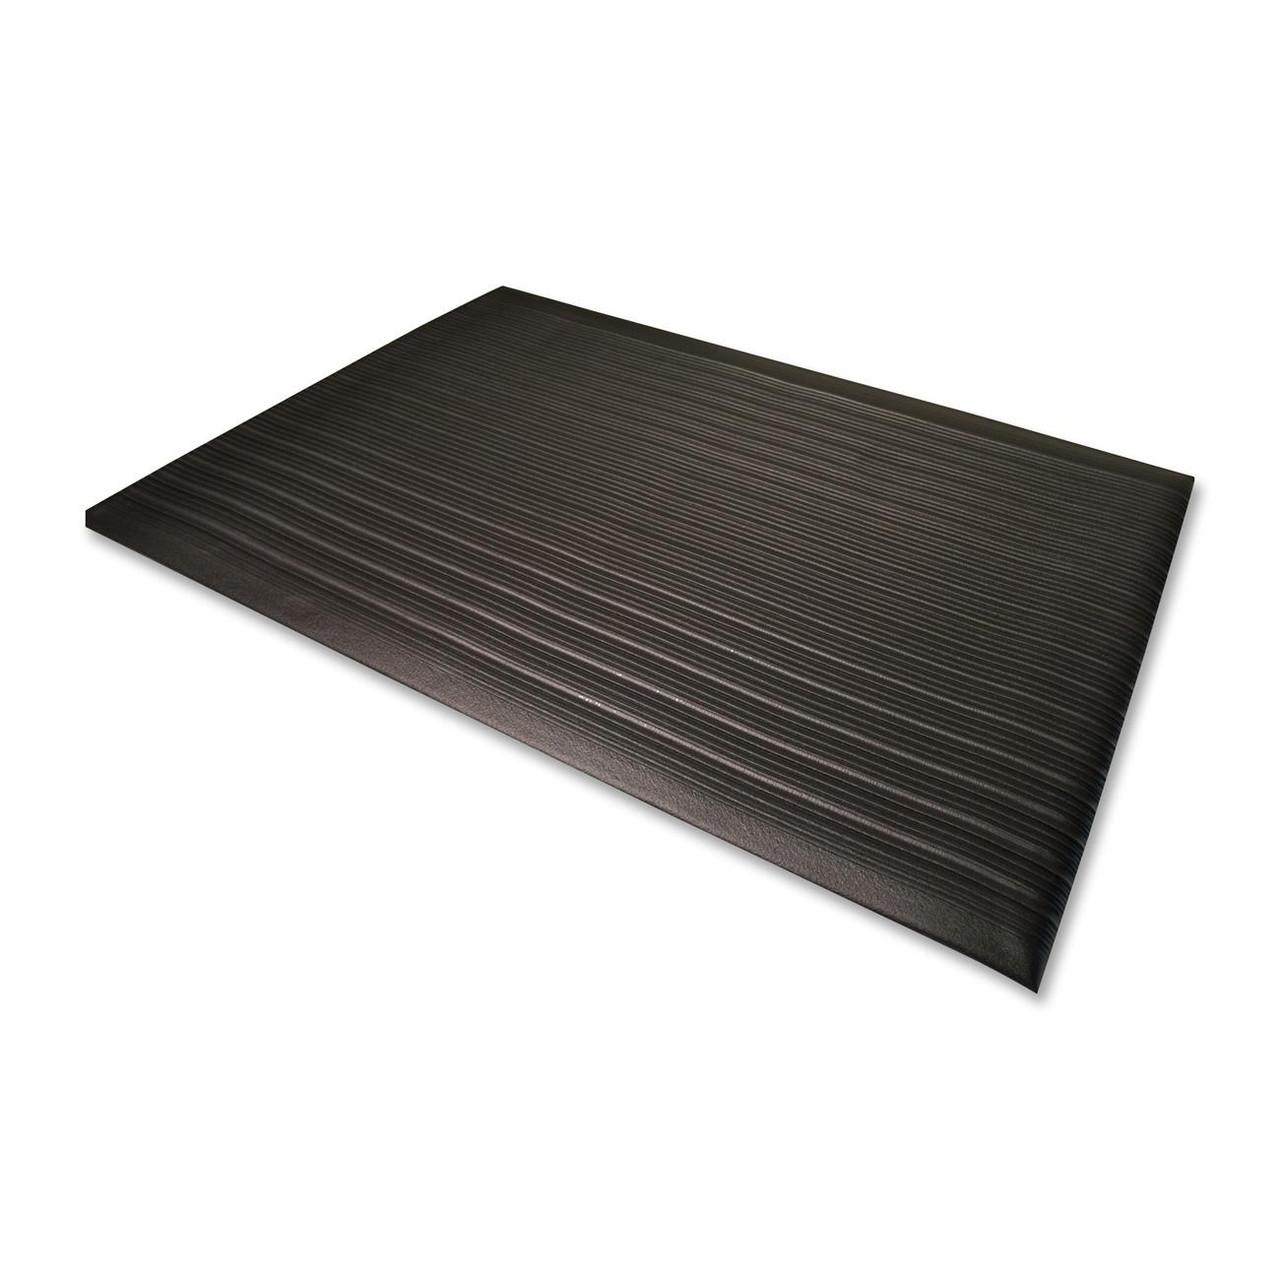 Mount-it! Anti Fatigue Floor Mat, Black Standing Comfort Mat For